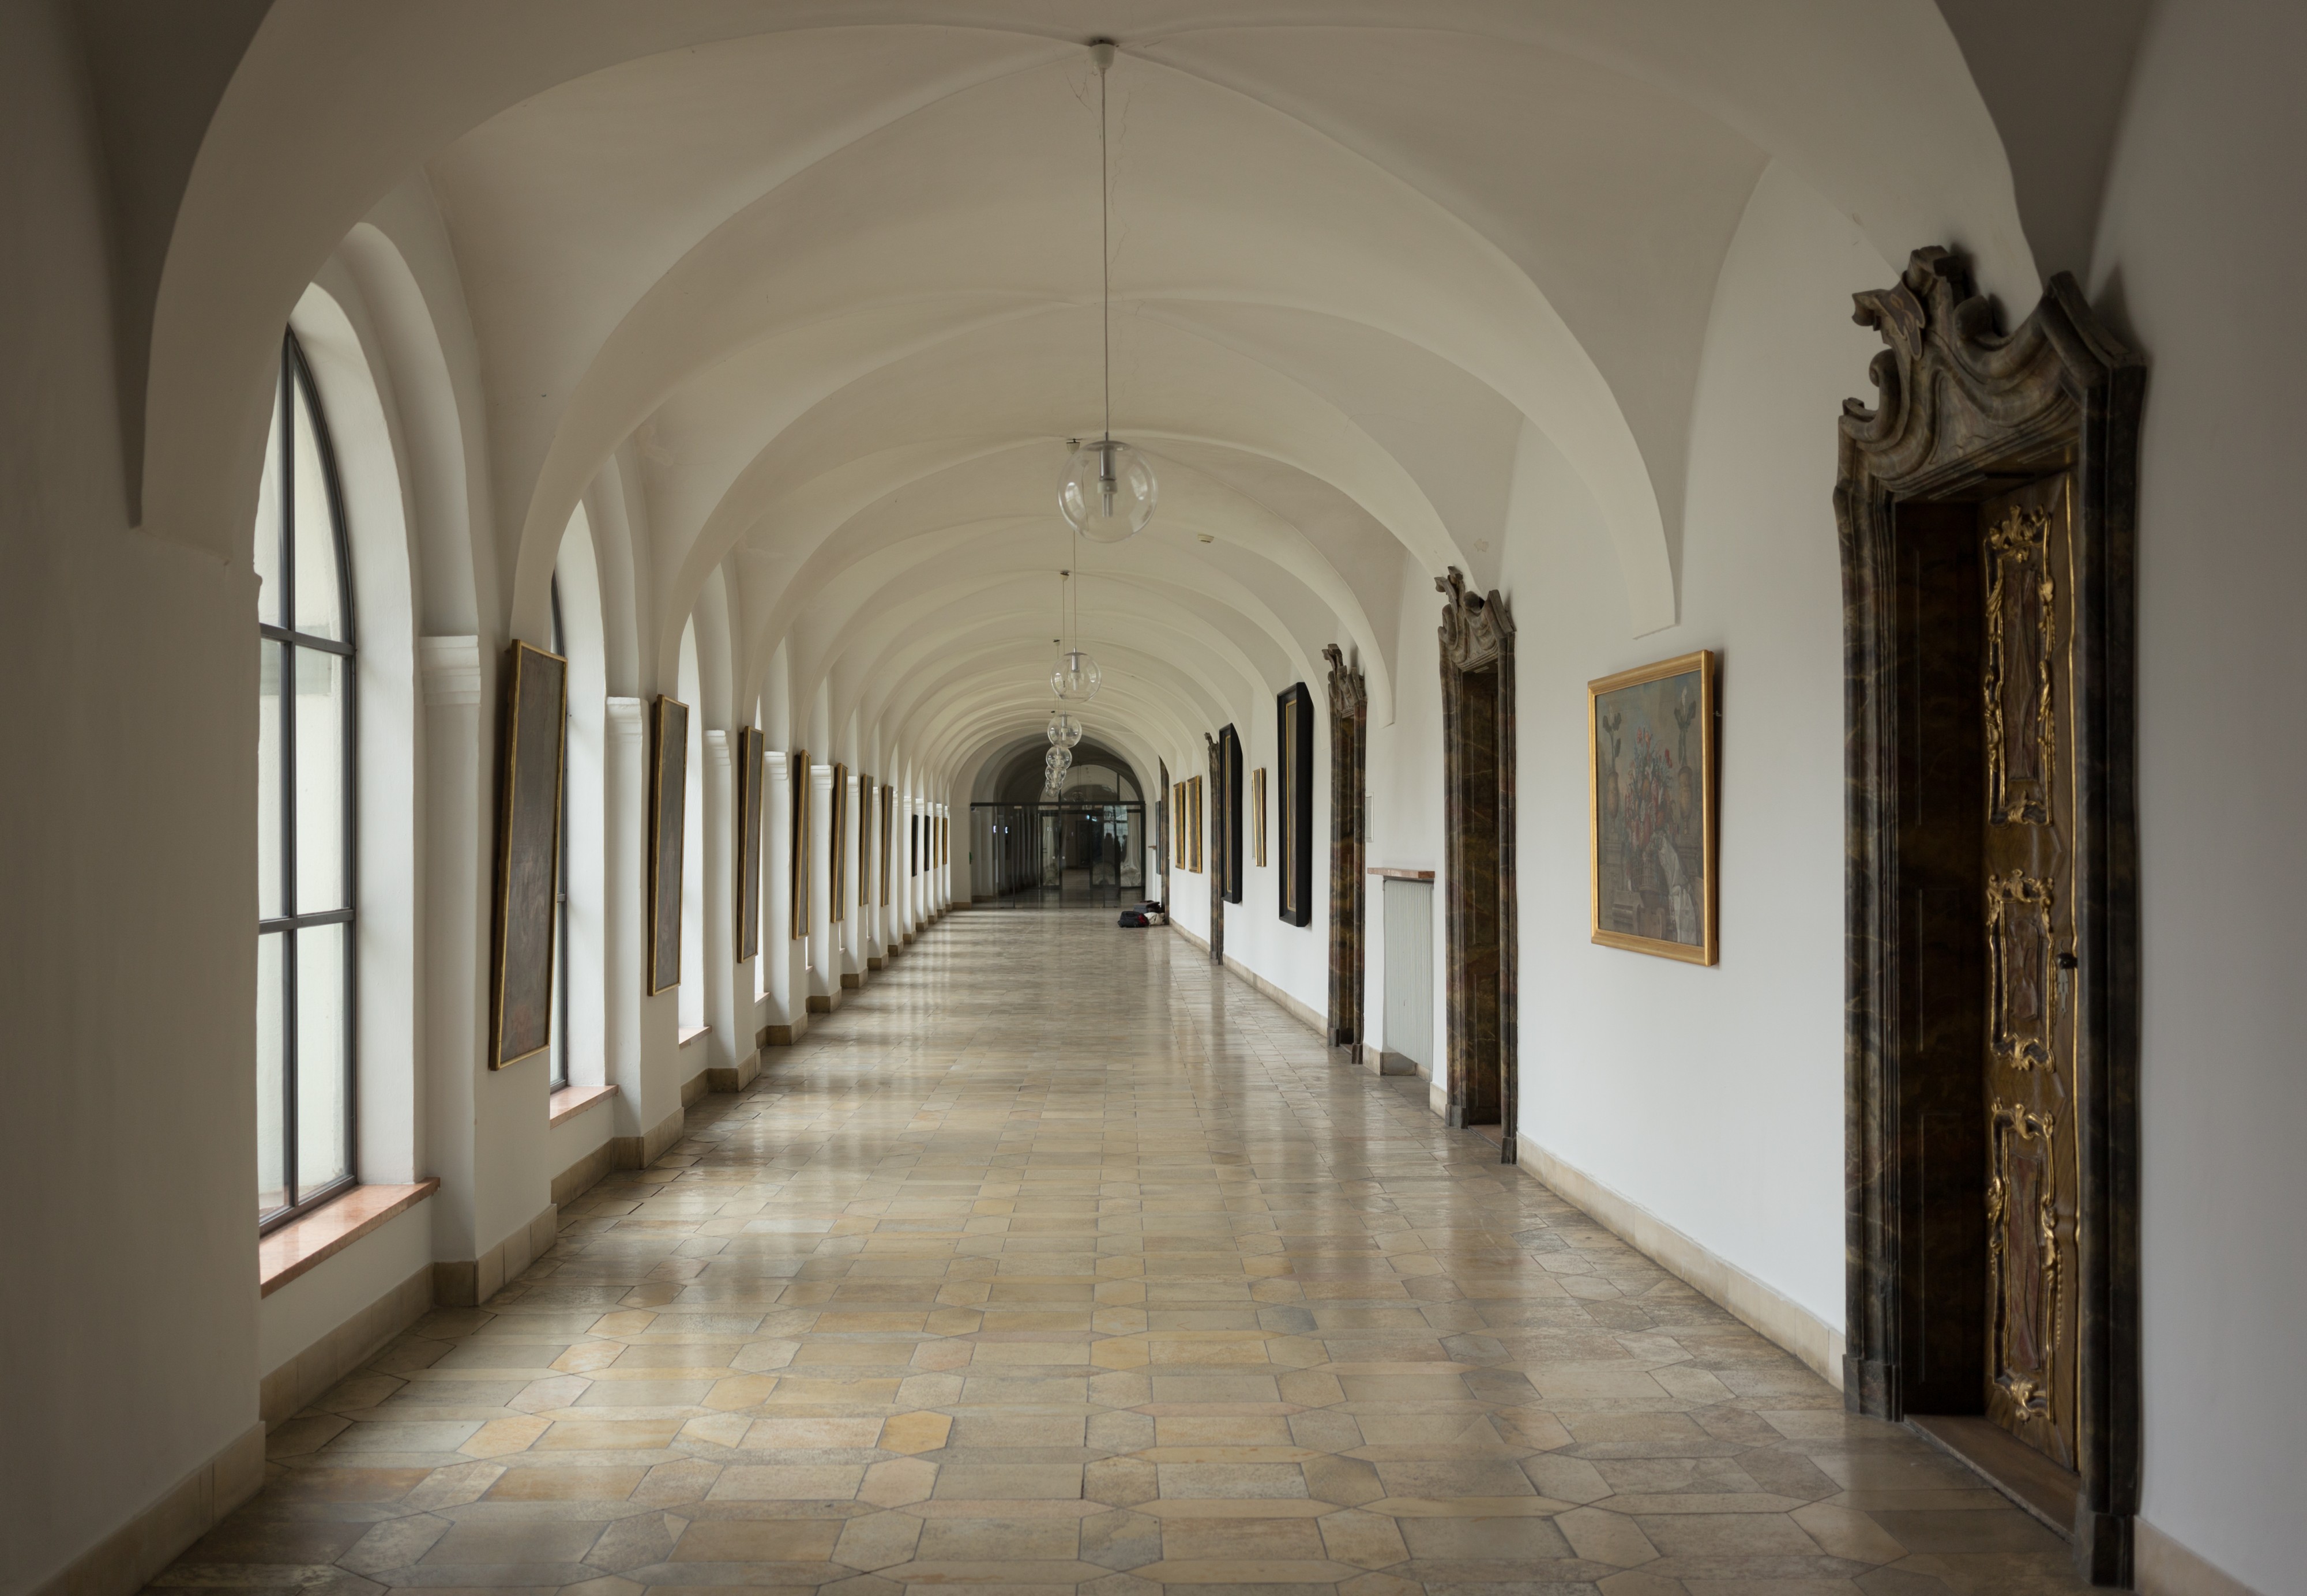 Fürstäbtliche Residenz - Hallway